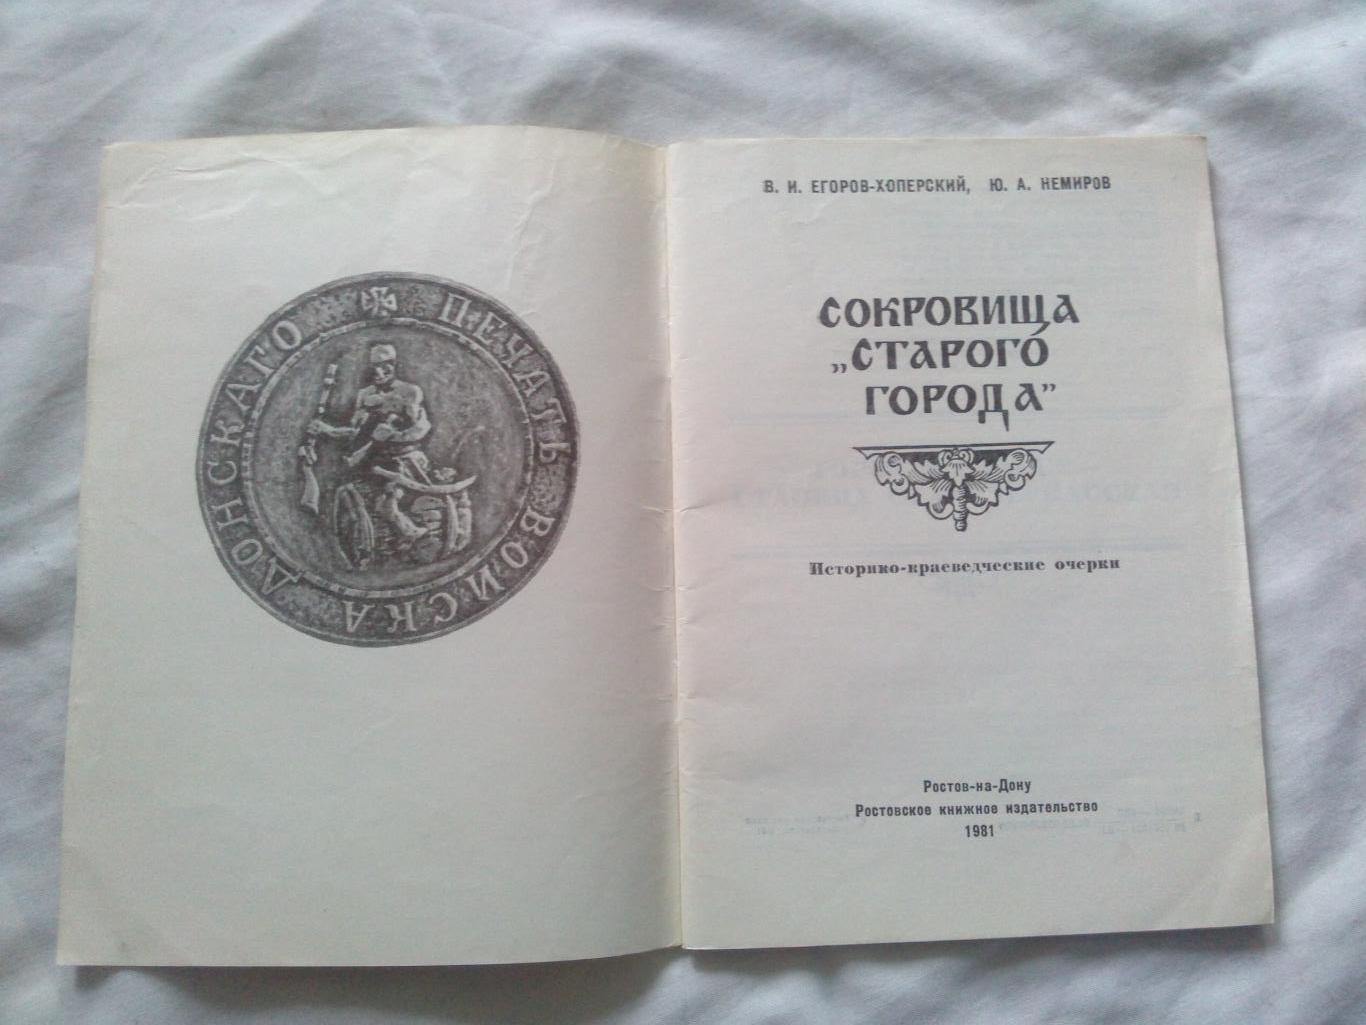 Путеводитель : Сокровища Старого города 1980 г. (Старочеркасск , казаки) 1